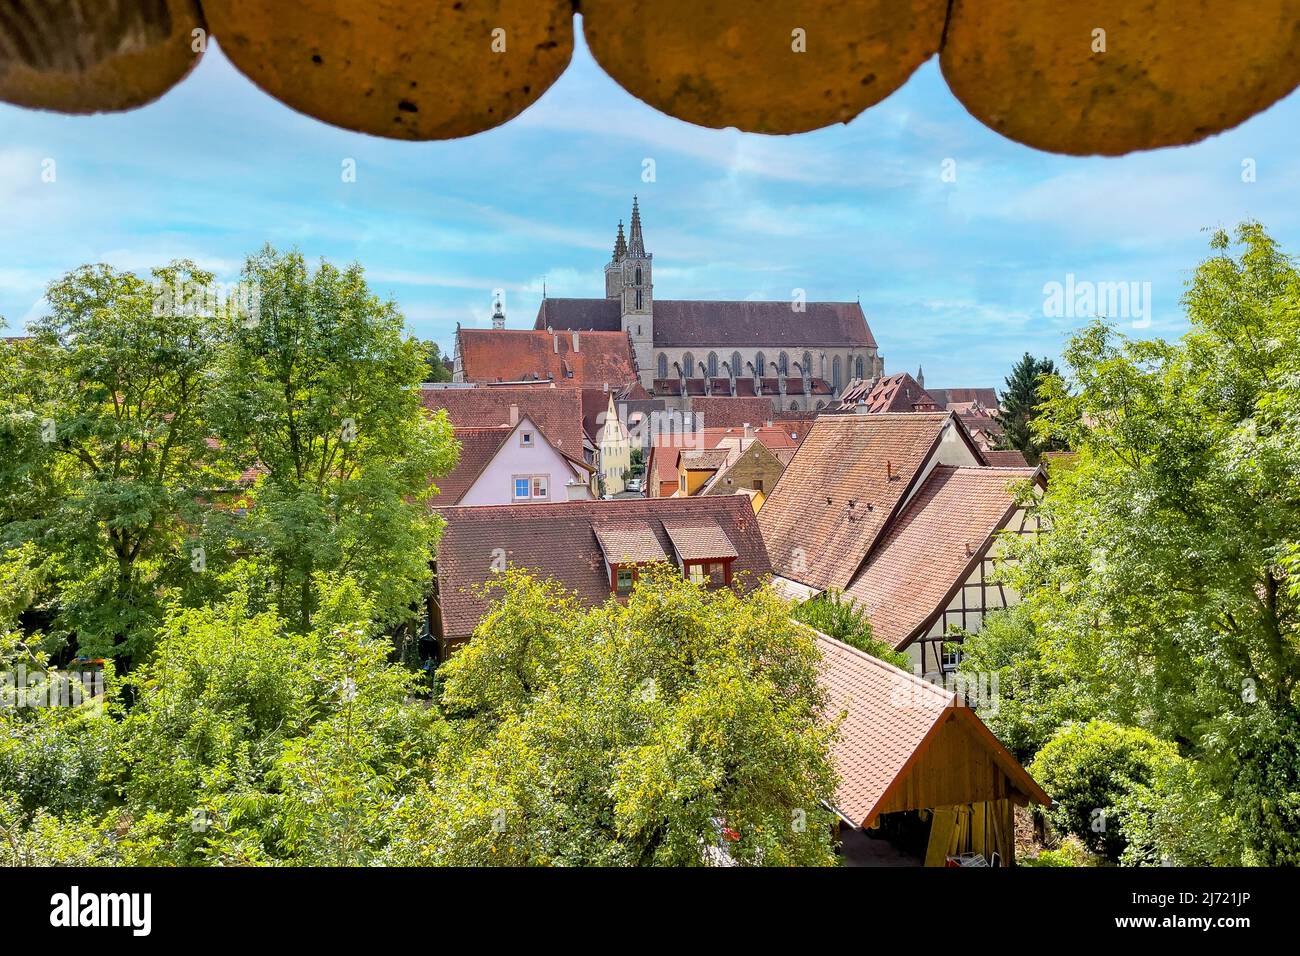 Blick auf Kirche St. Jakob von Wehrgang in begehbare Stadtmauer mit Schindel aus Holz, Rothenburg ob der Tauber, Franken, Bayern, Deutschland Stock Photo